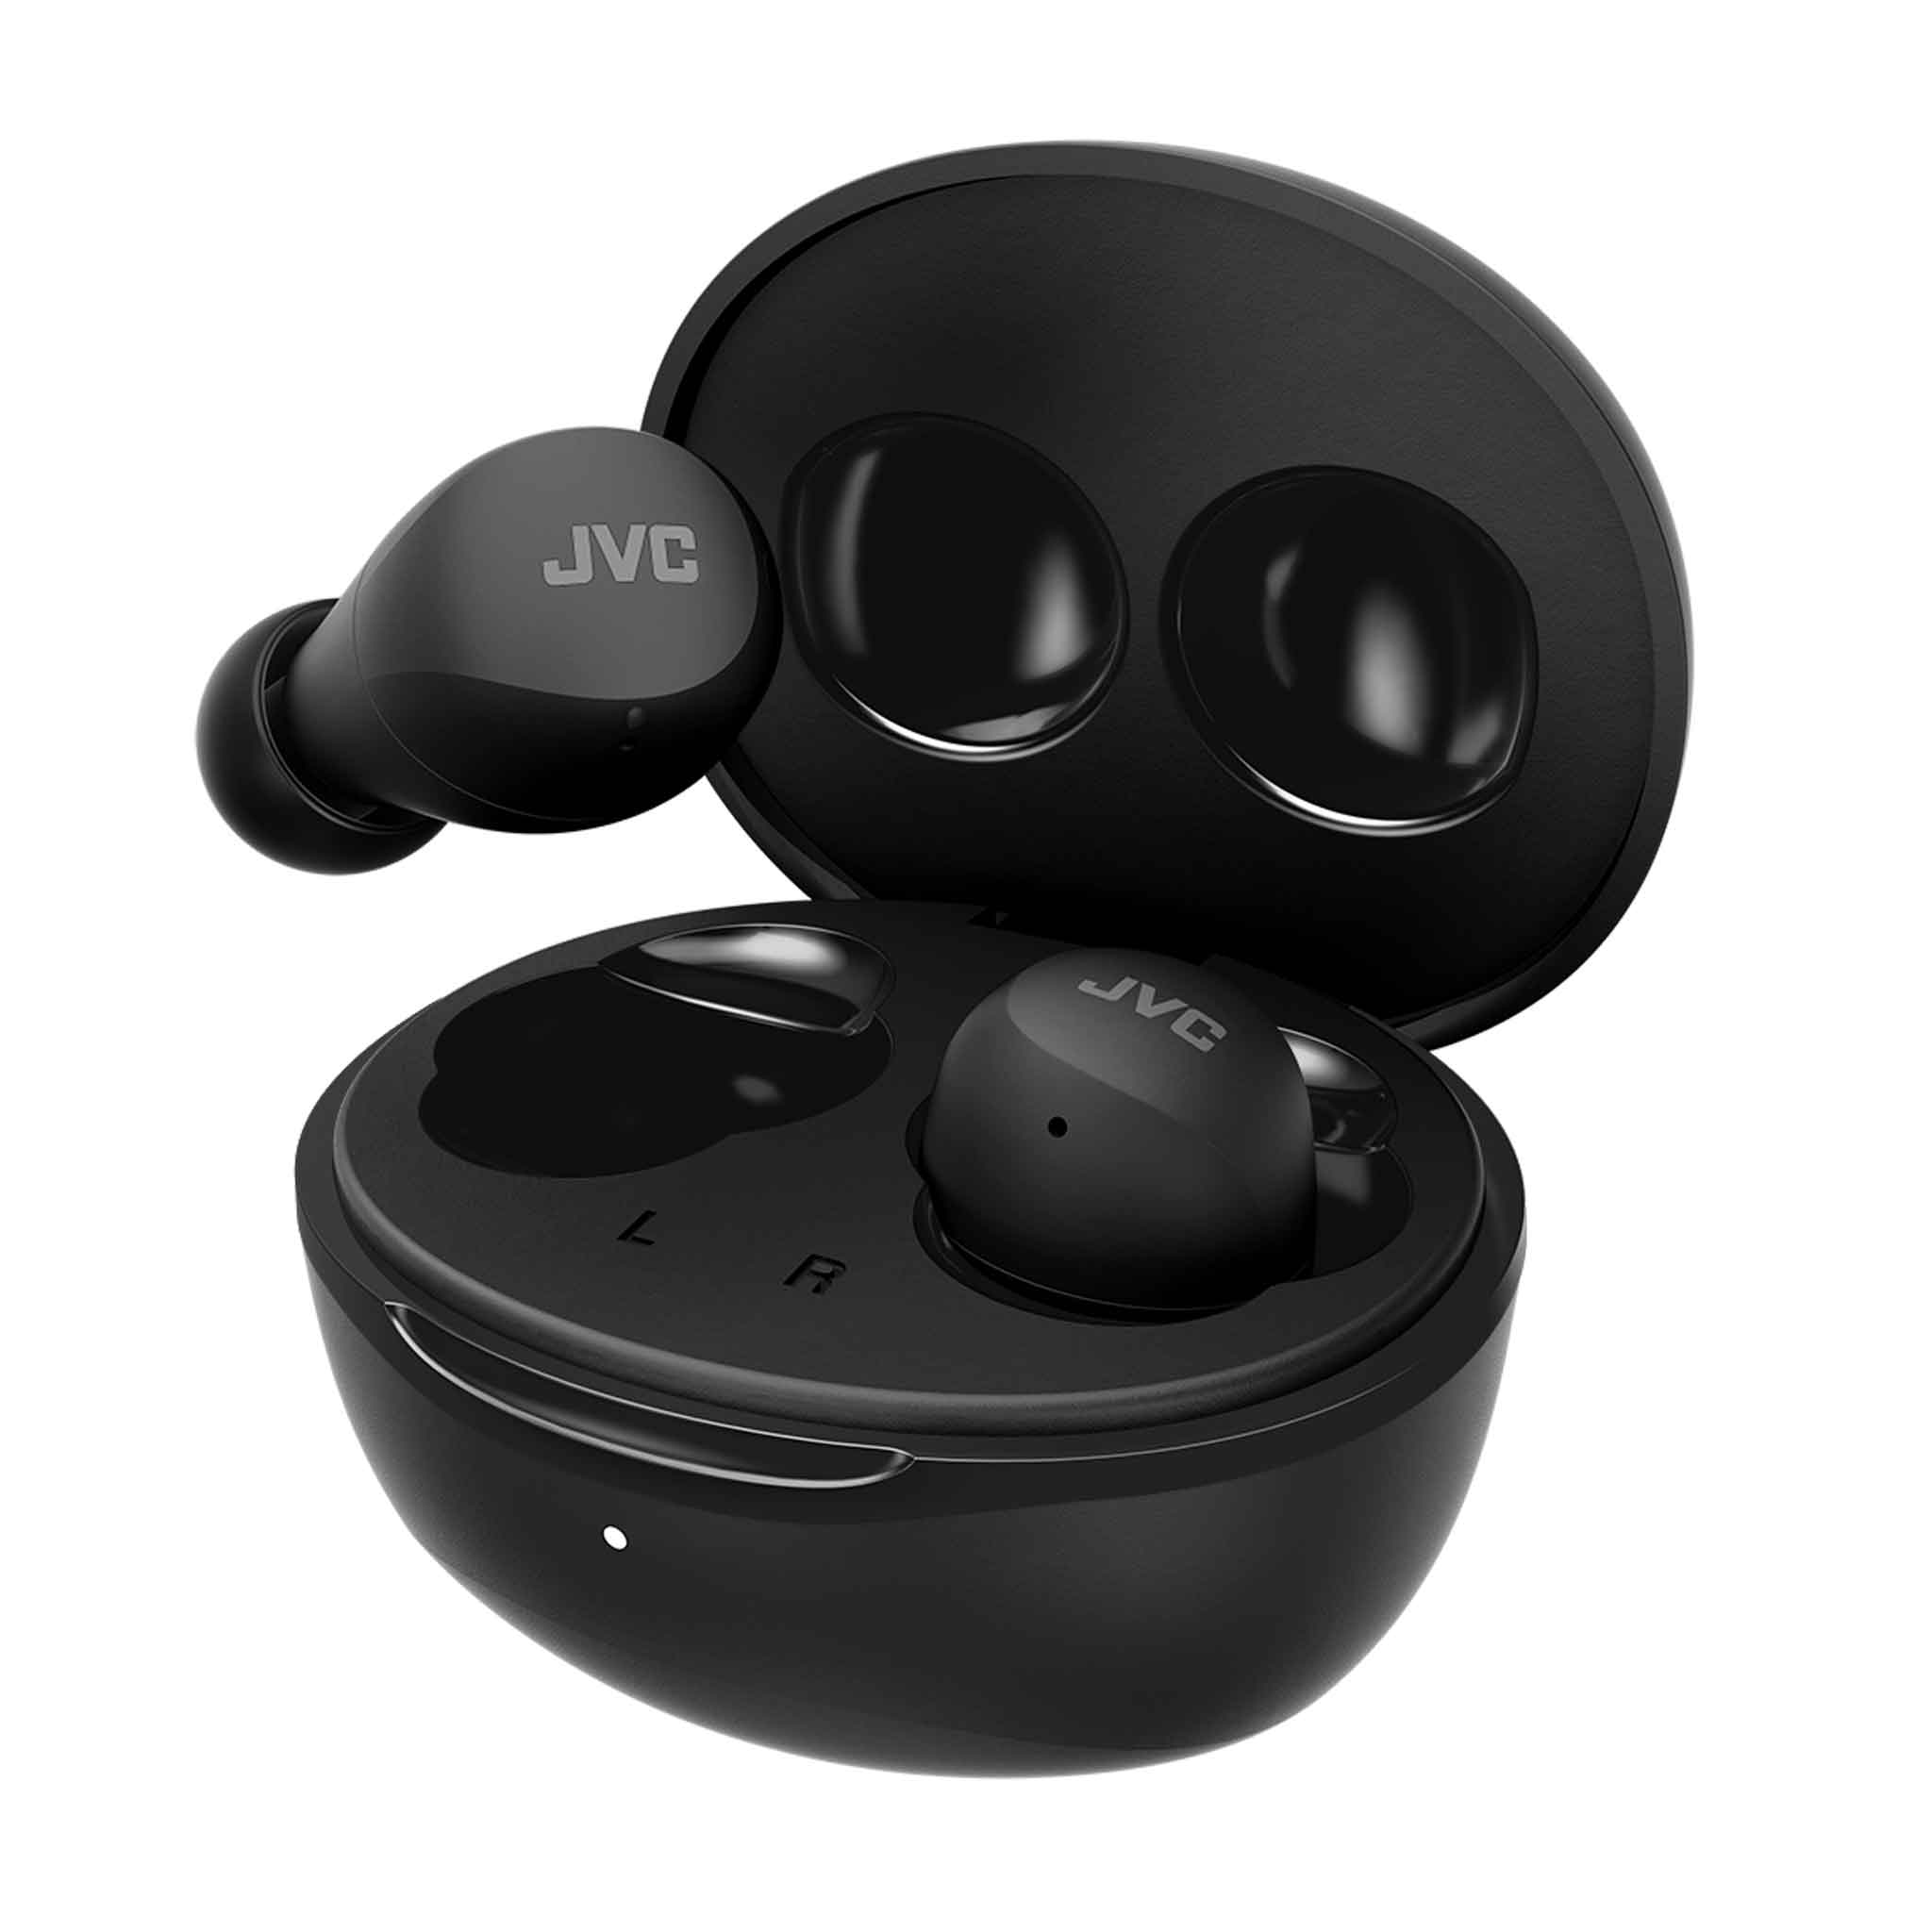 HA-Z66T-B JVC Gumy wireless earbuds & charging case in black